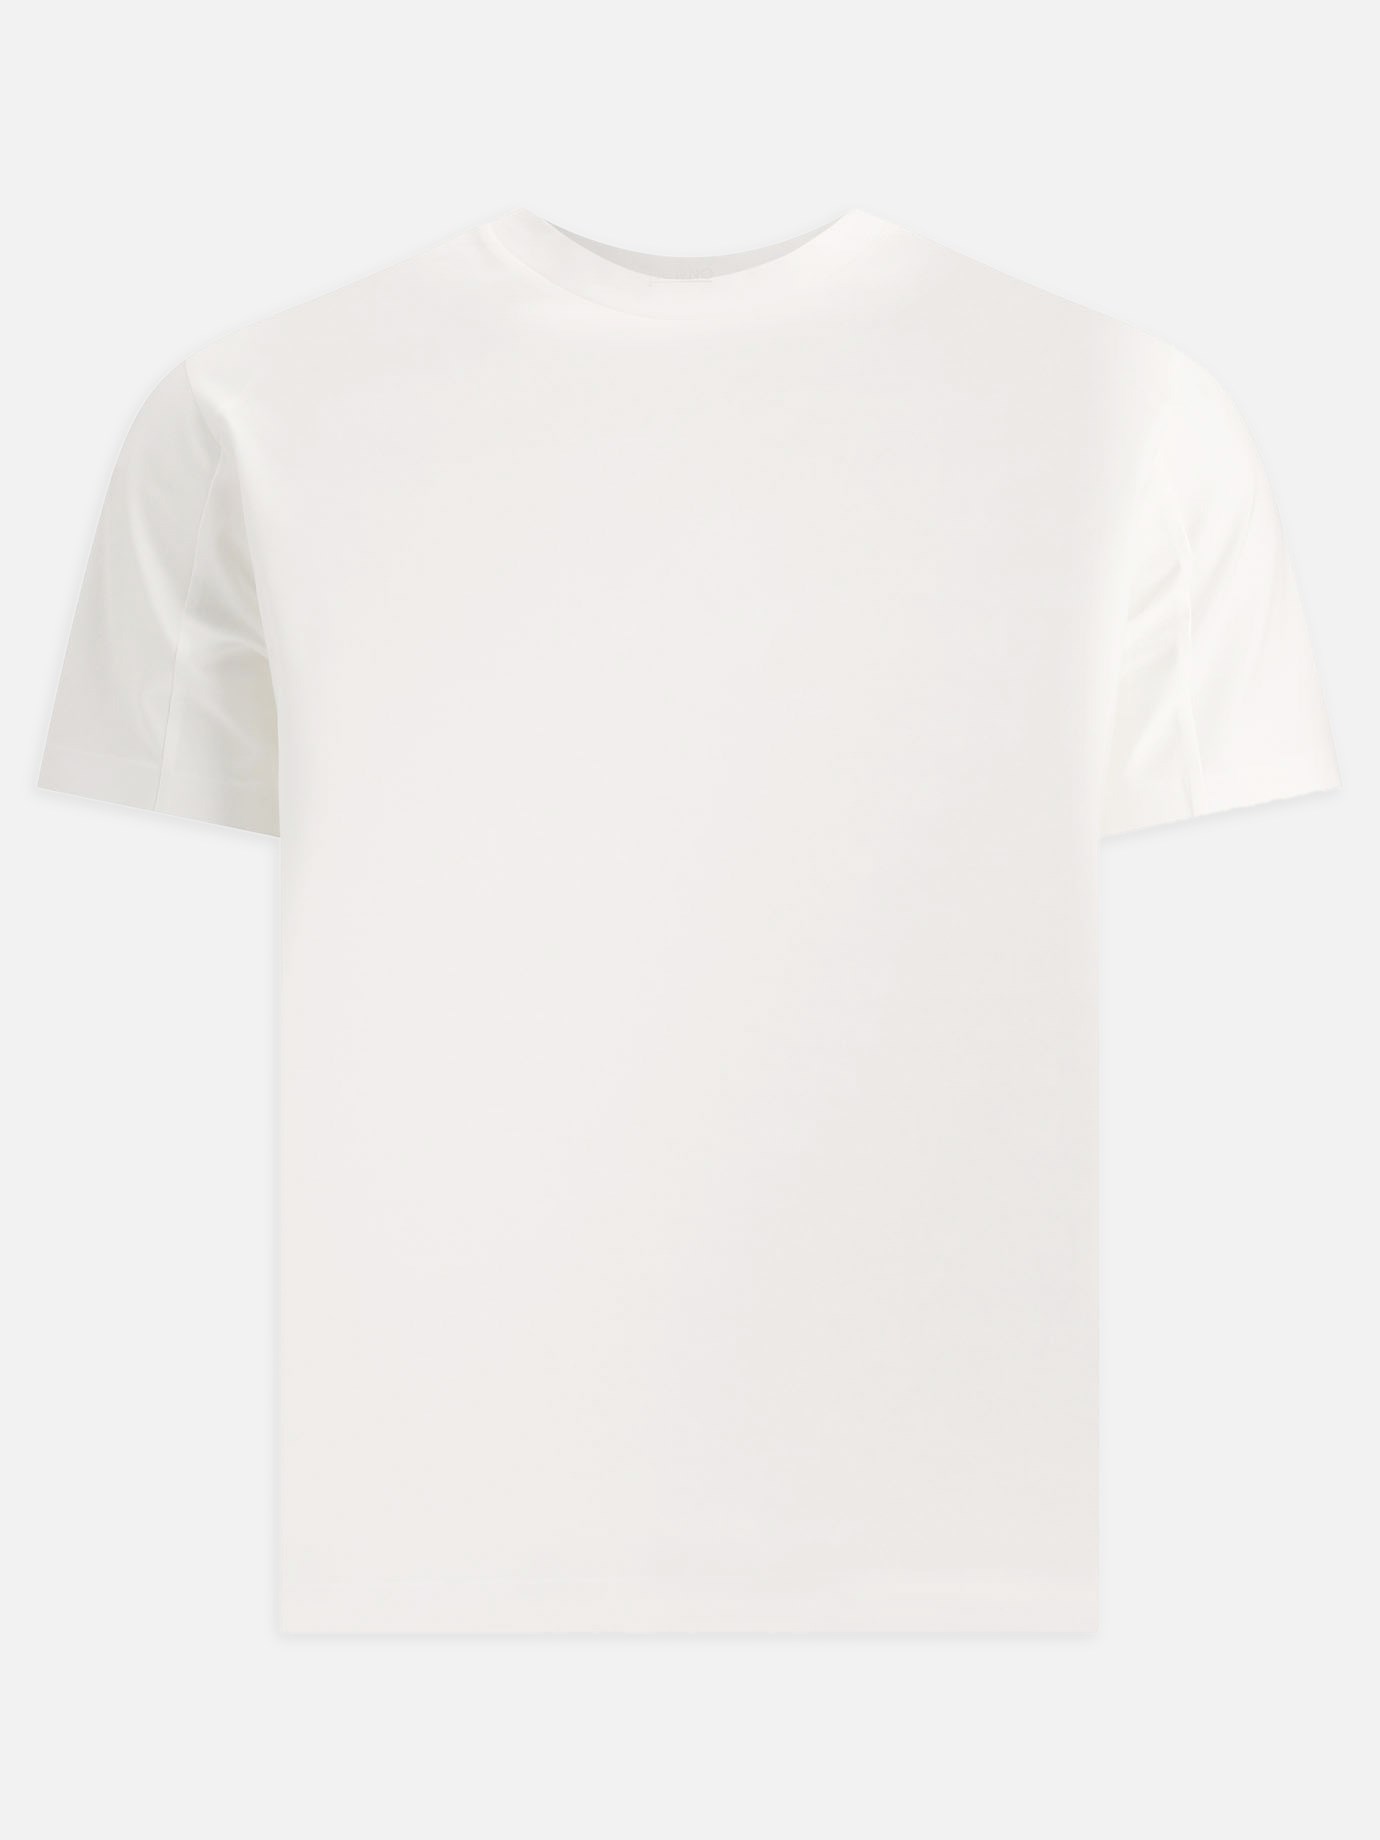 Seamless t-shirtby Herno - 5